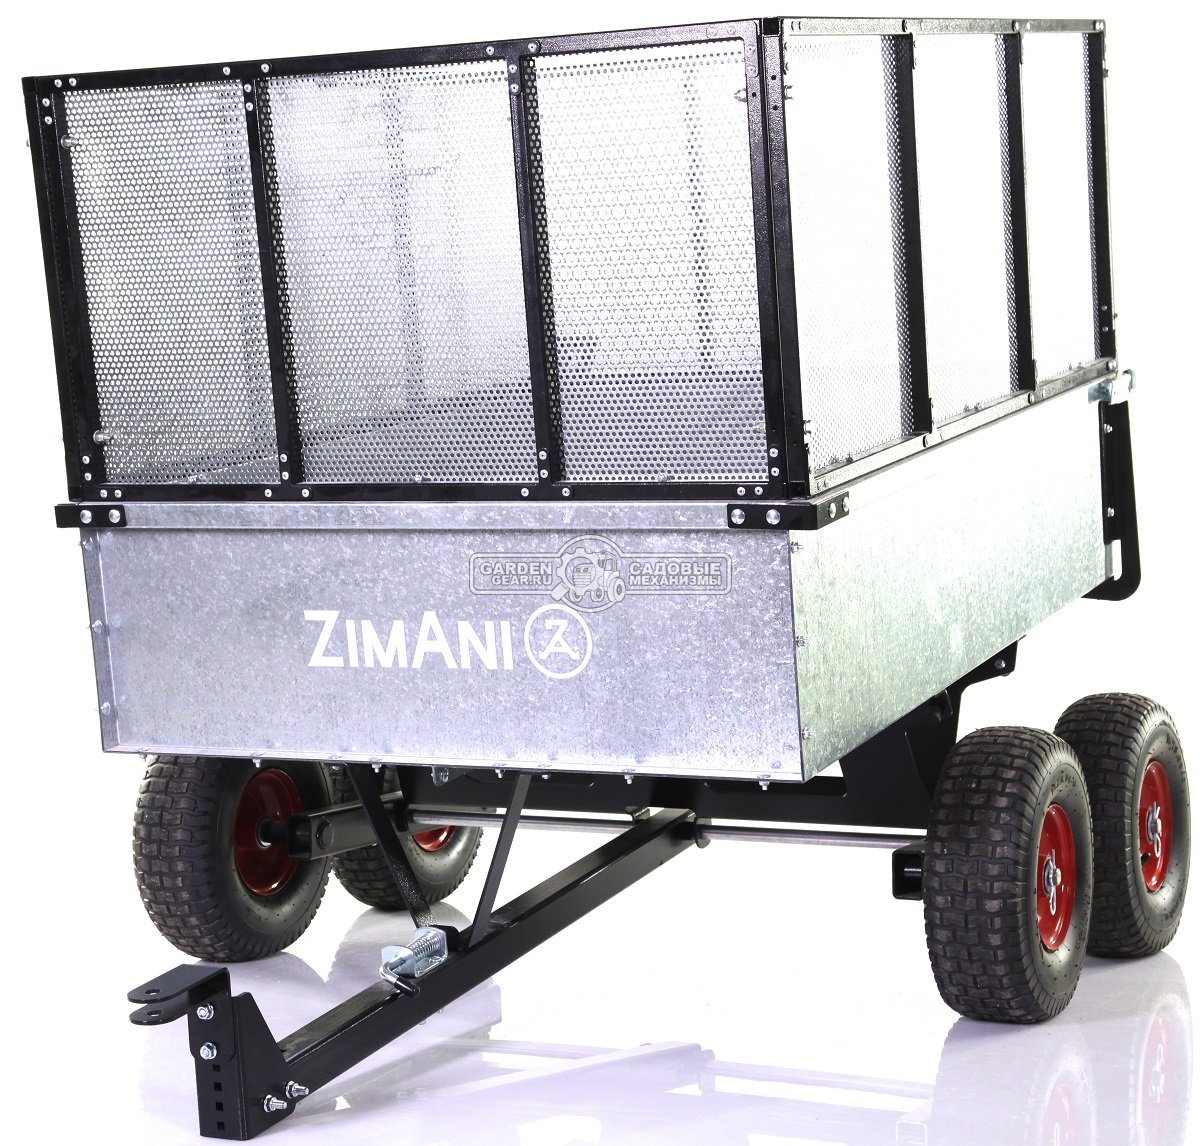 Тележка - прицеп ZimAni Stainless steel 500S 4WD с бортами для садовых тракторов, с механизмом опрокидывания (4 колеса, оцинкованной сталь, 500 кг)